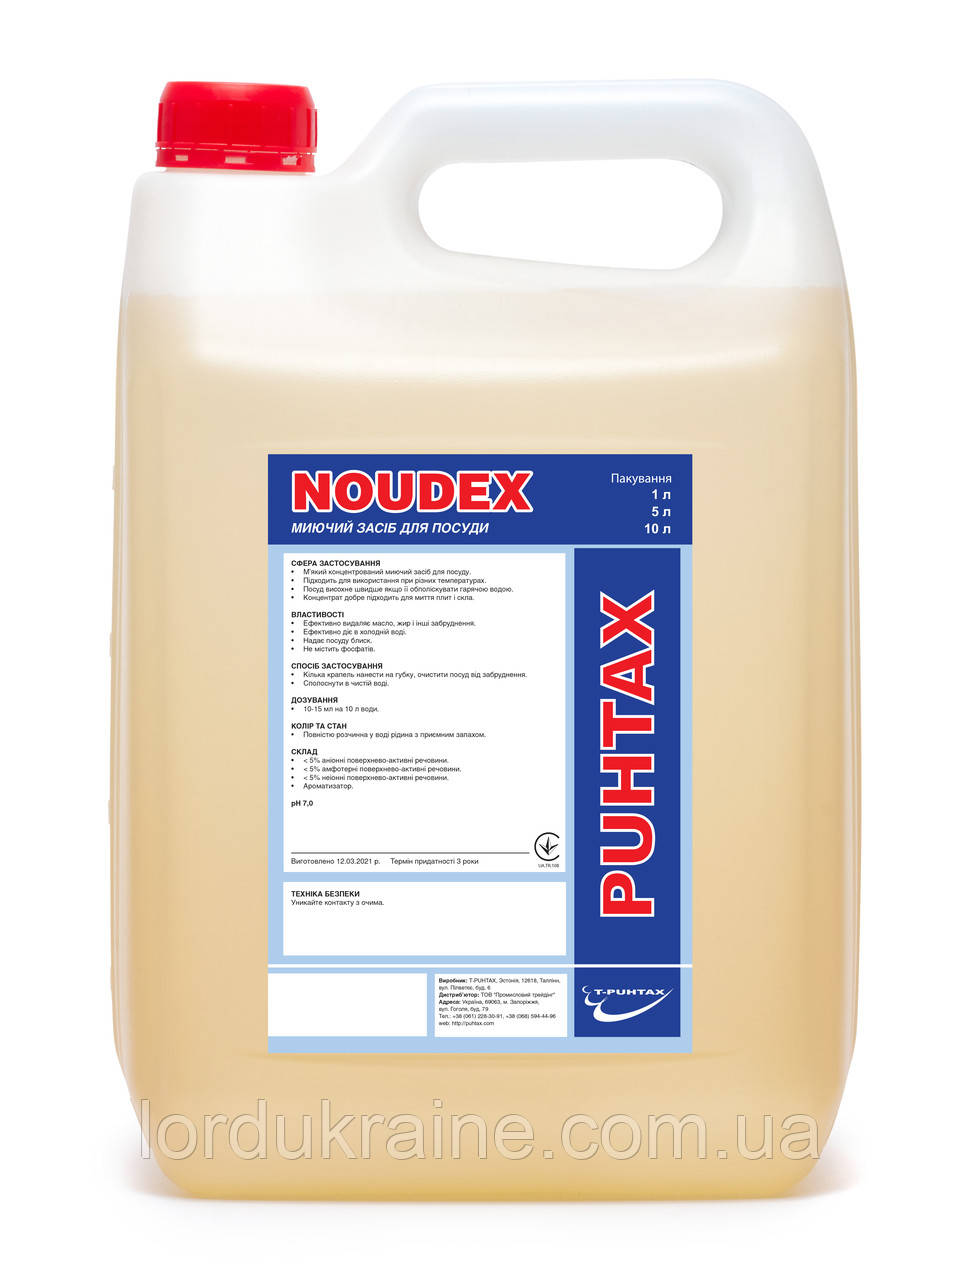 Засіб для миття посуду NOUDEX (5 л.) T-Puhtax